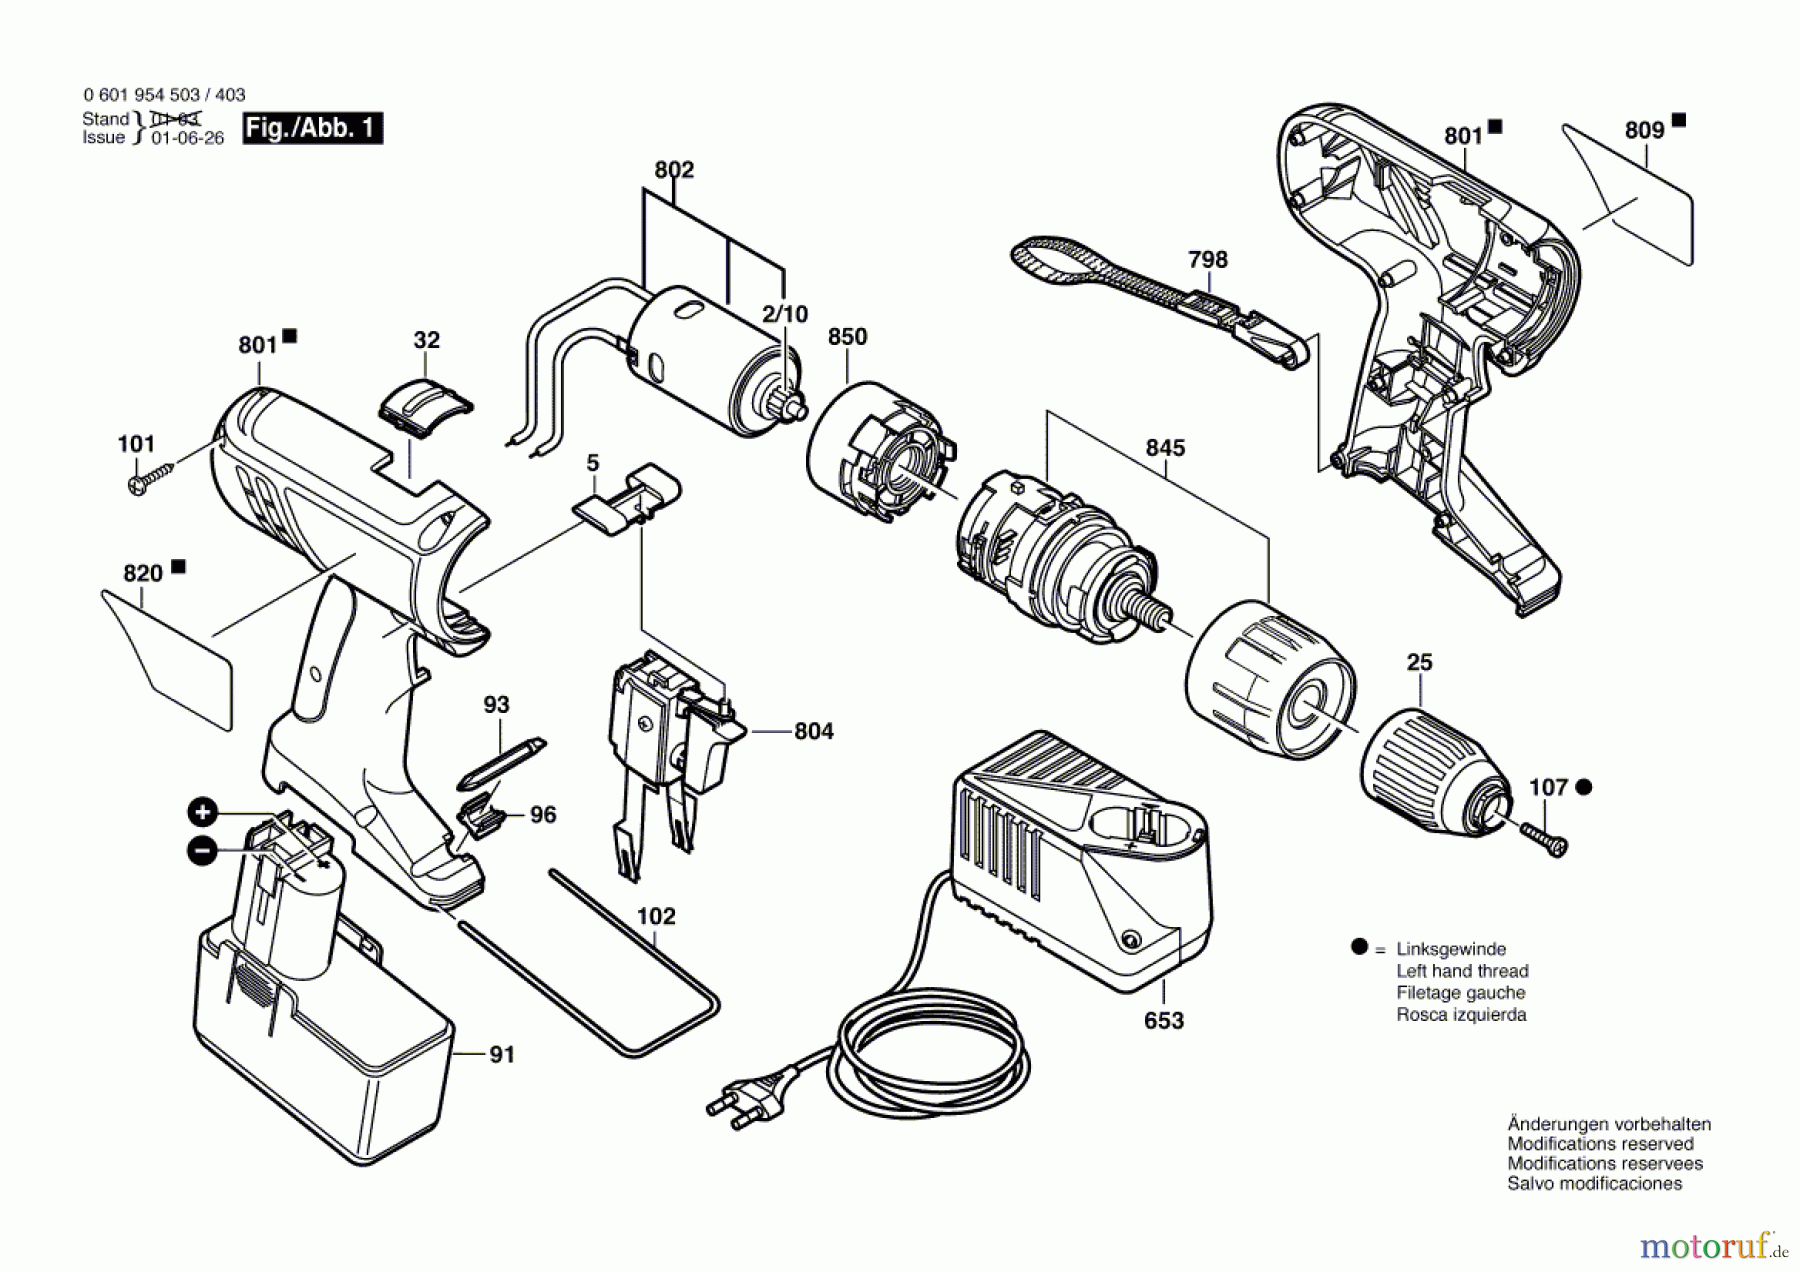  Bosch Akku Werkzeug Akku-Schlagbohrmaschine GSB 12 VE-2 Seite 1